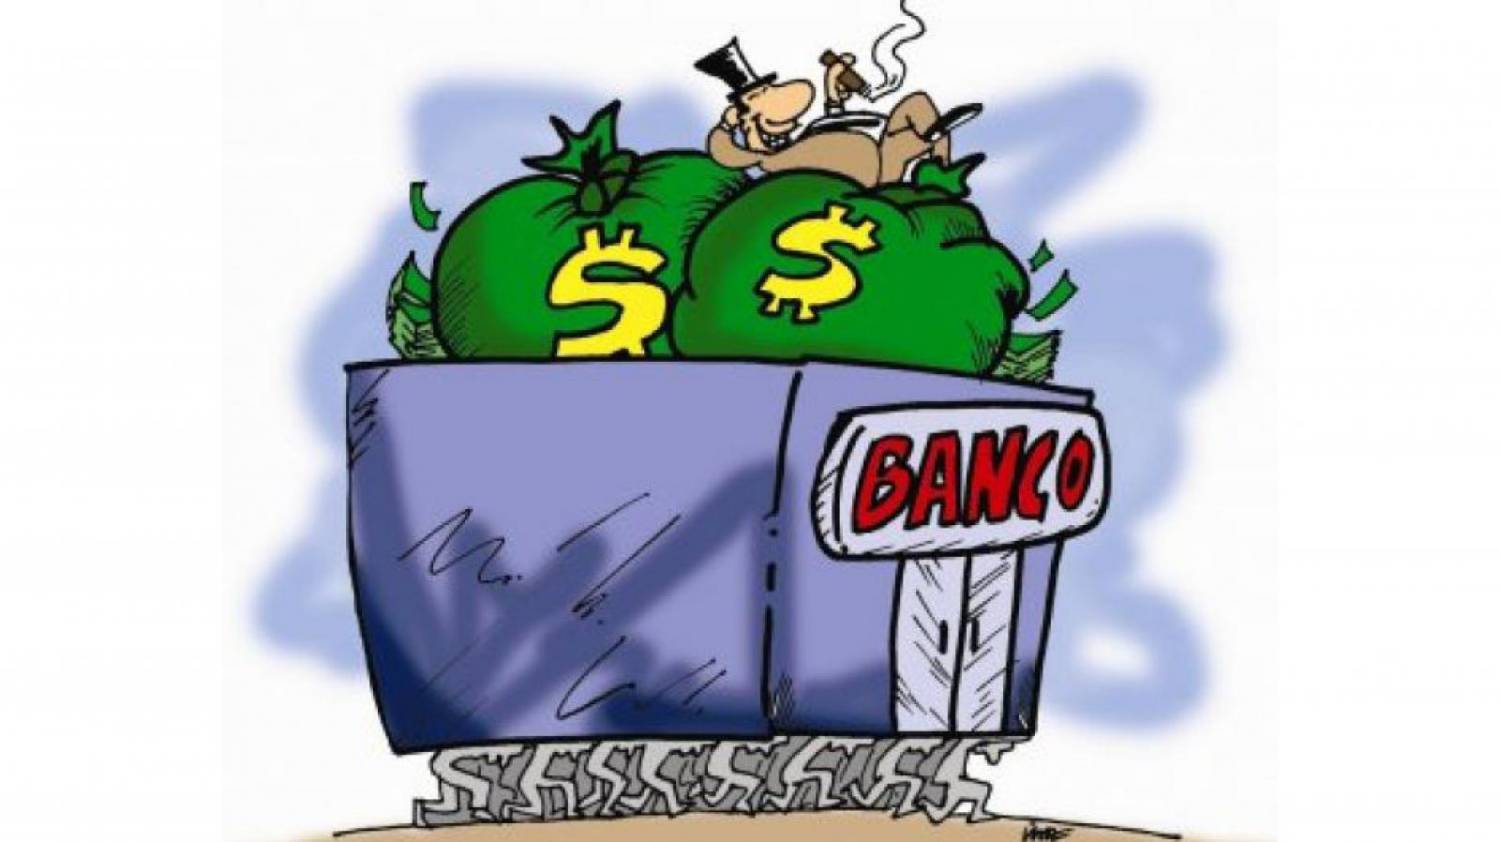 Bancos foram os maiores beneficiados com o Refis